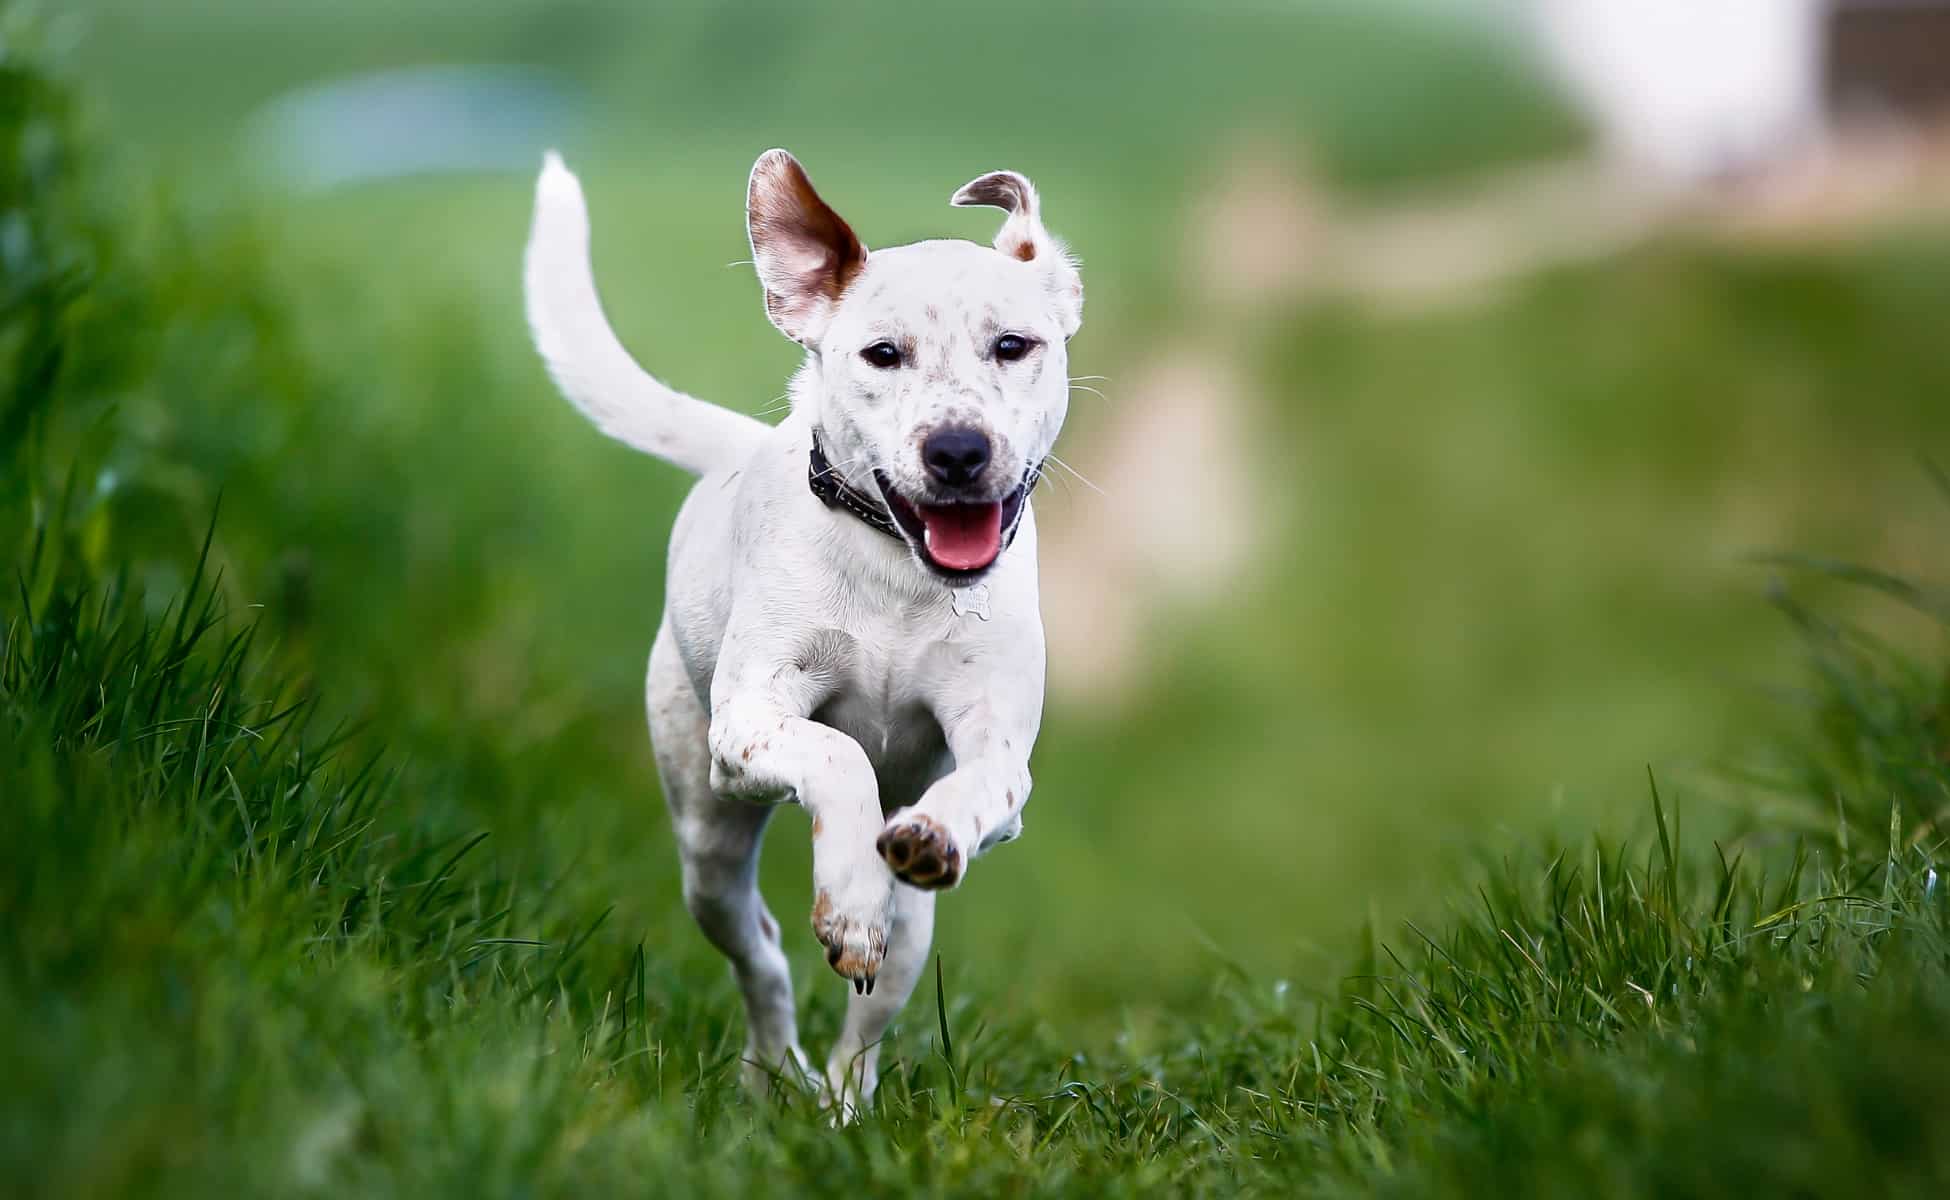 Dog running through a field